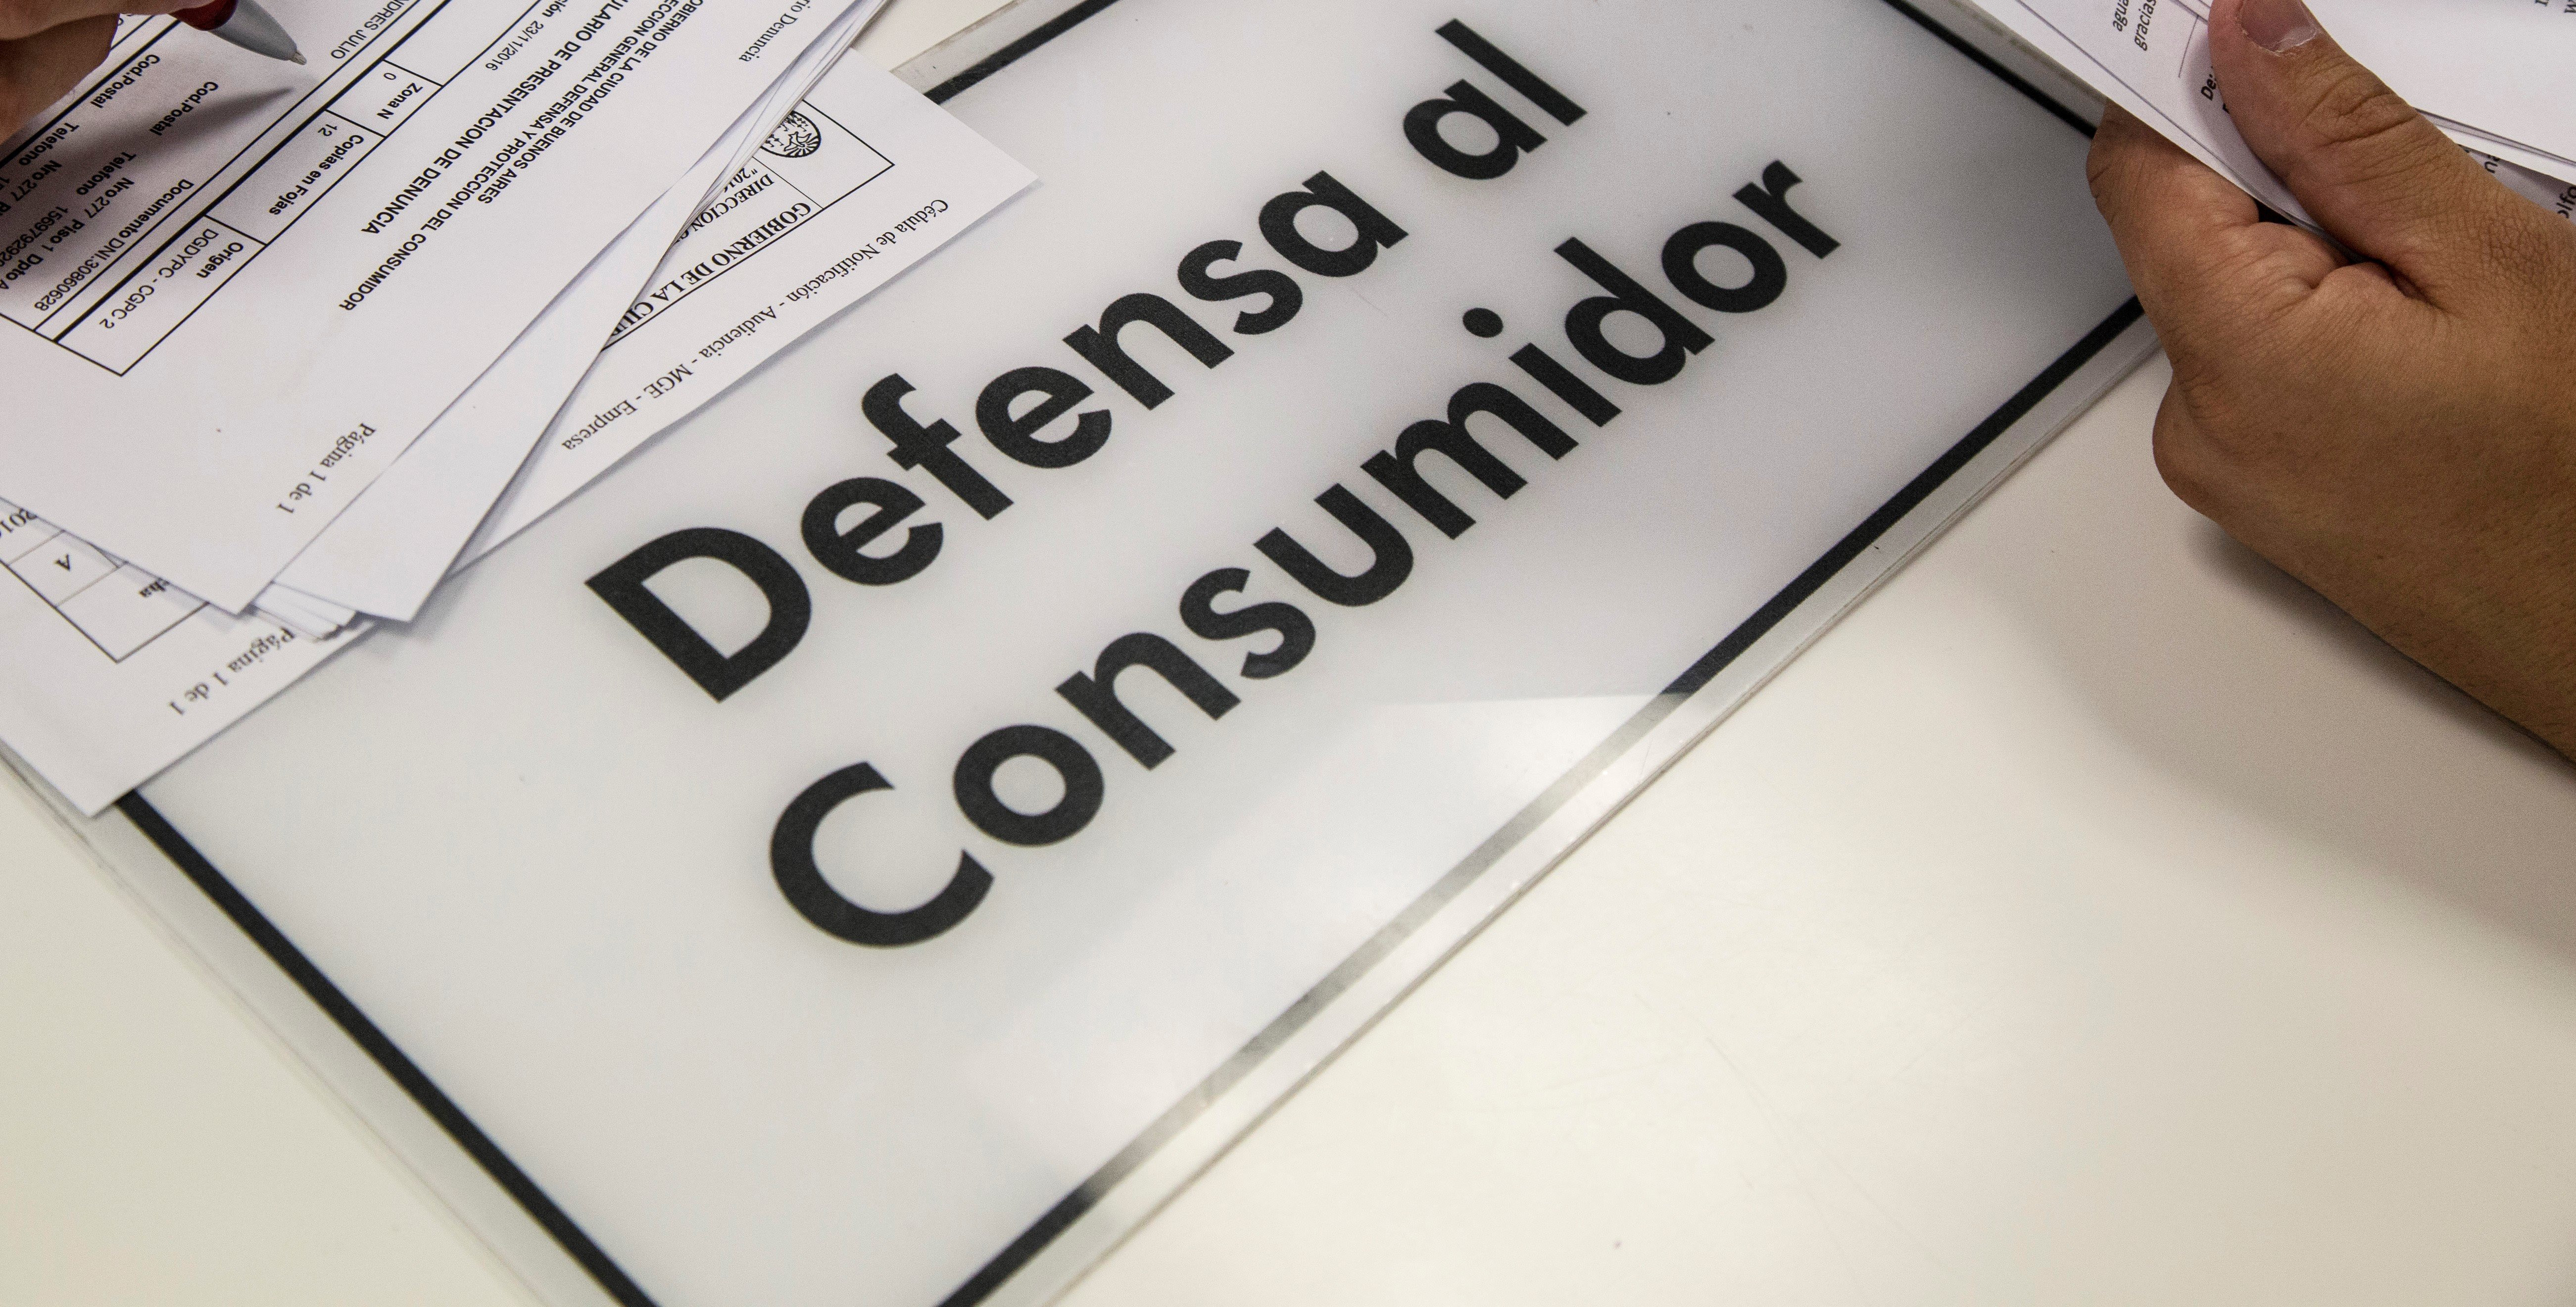 Los porteños presentaron más de tres denuncias por día contra administradores de consorcios